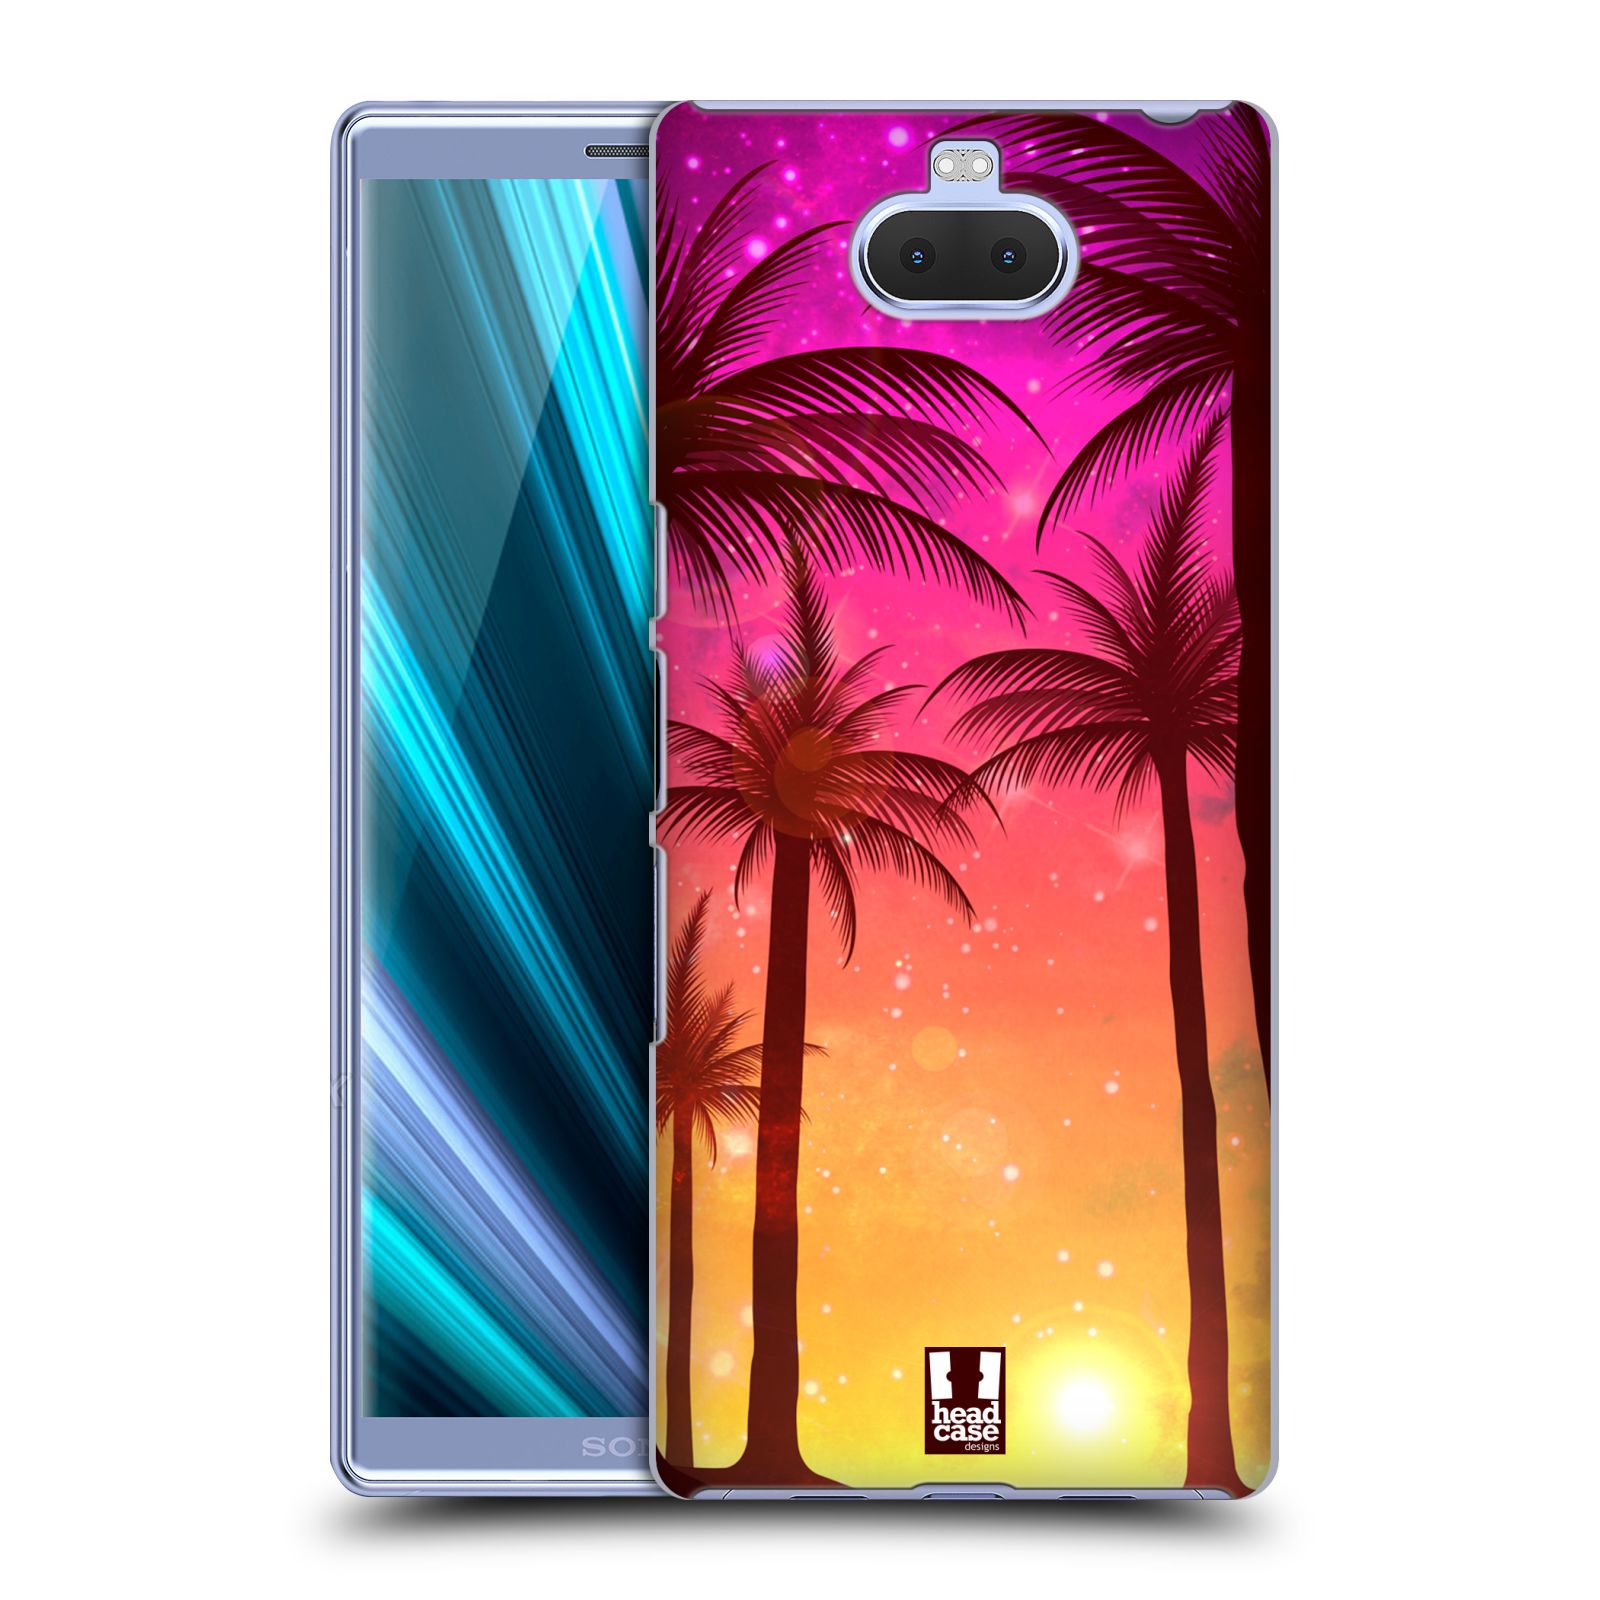 Pouzdro na mobil Sony Xperia 10 - Head Case - vzor Kreslený motiv silueta moře a palmy RŮŽOVÁ